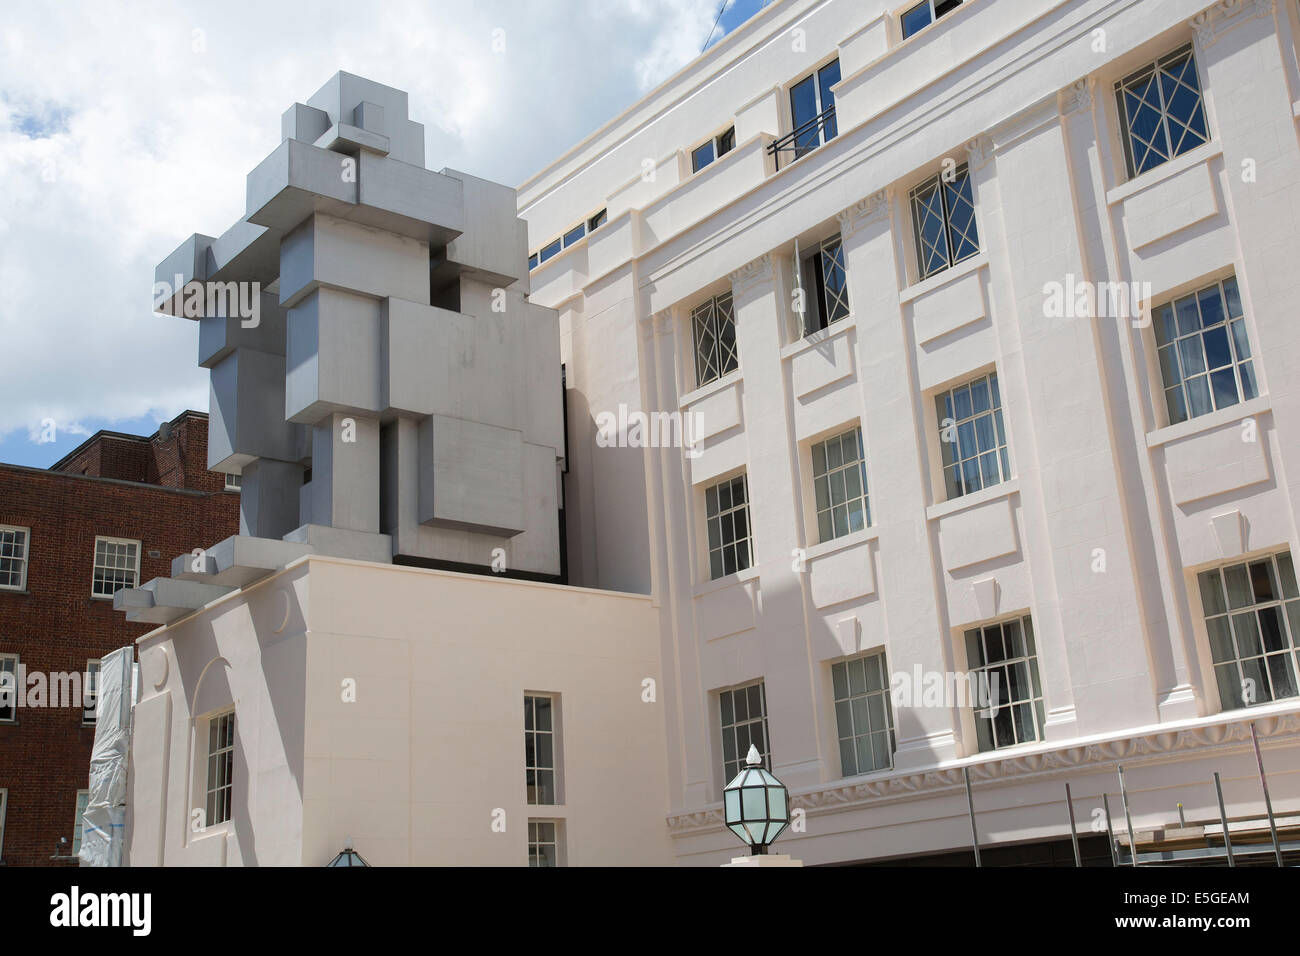 Nouveau Beaumont Hotel à Londres, au Royaume-Uni. "Chambre" une figure accroupie par l'artiste anglais Antony Gormley. Banque D'Images